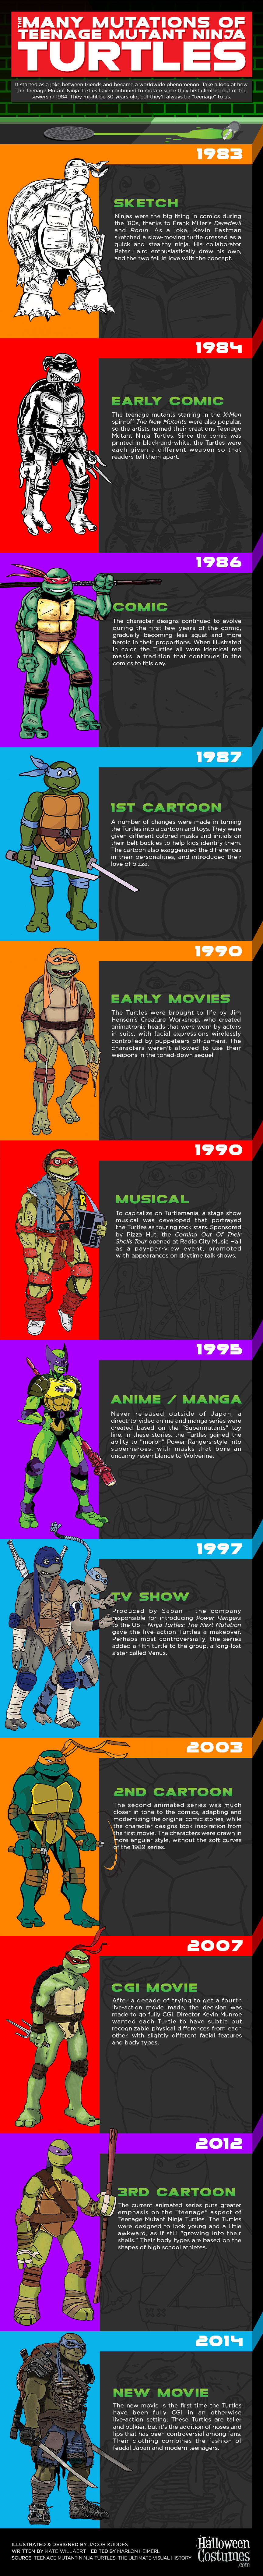 Teenage Mutant Ninja Turtles Infographic